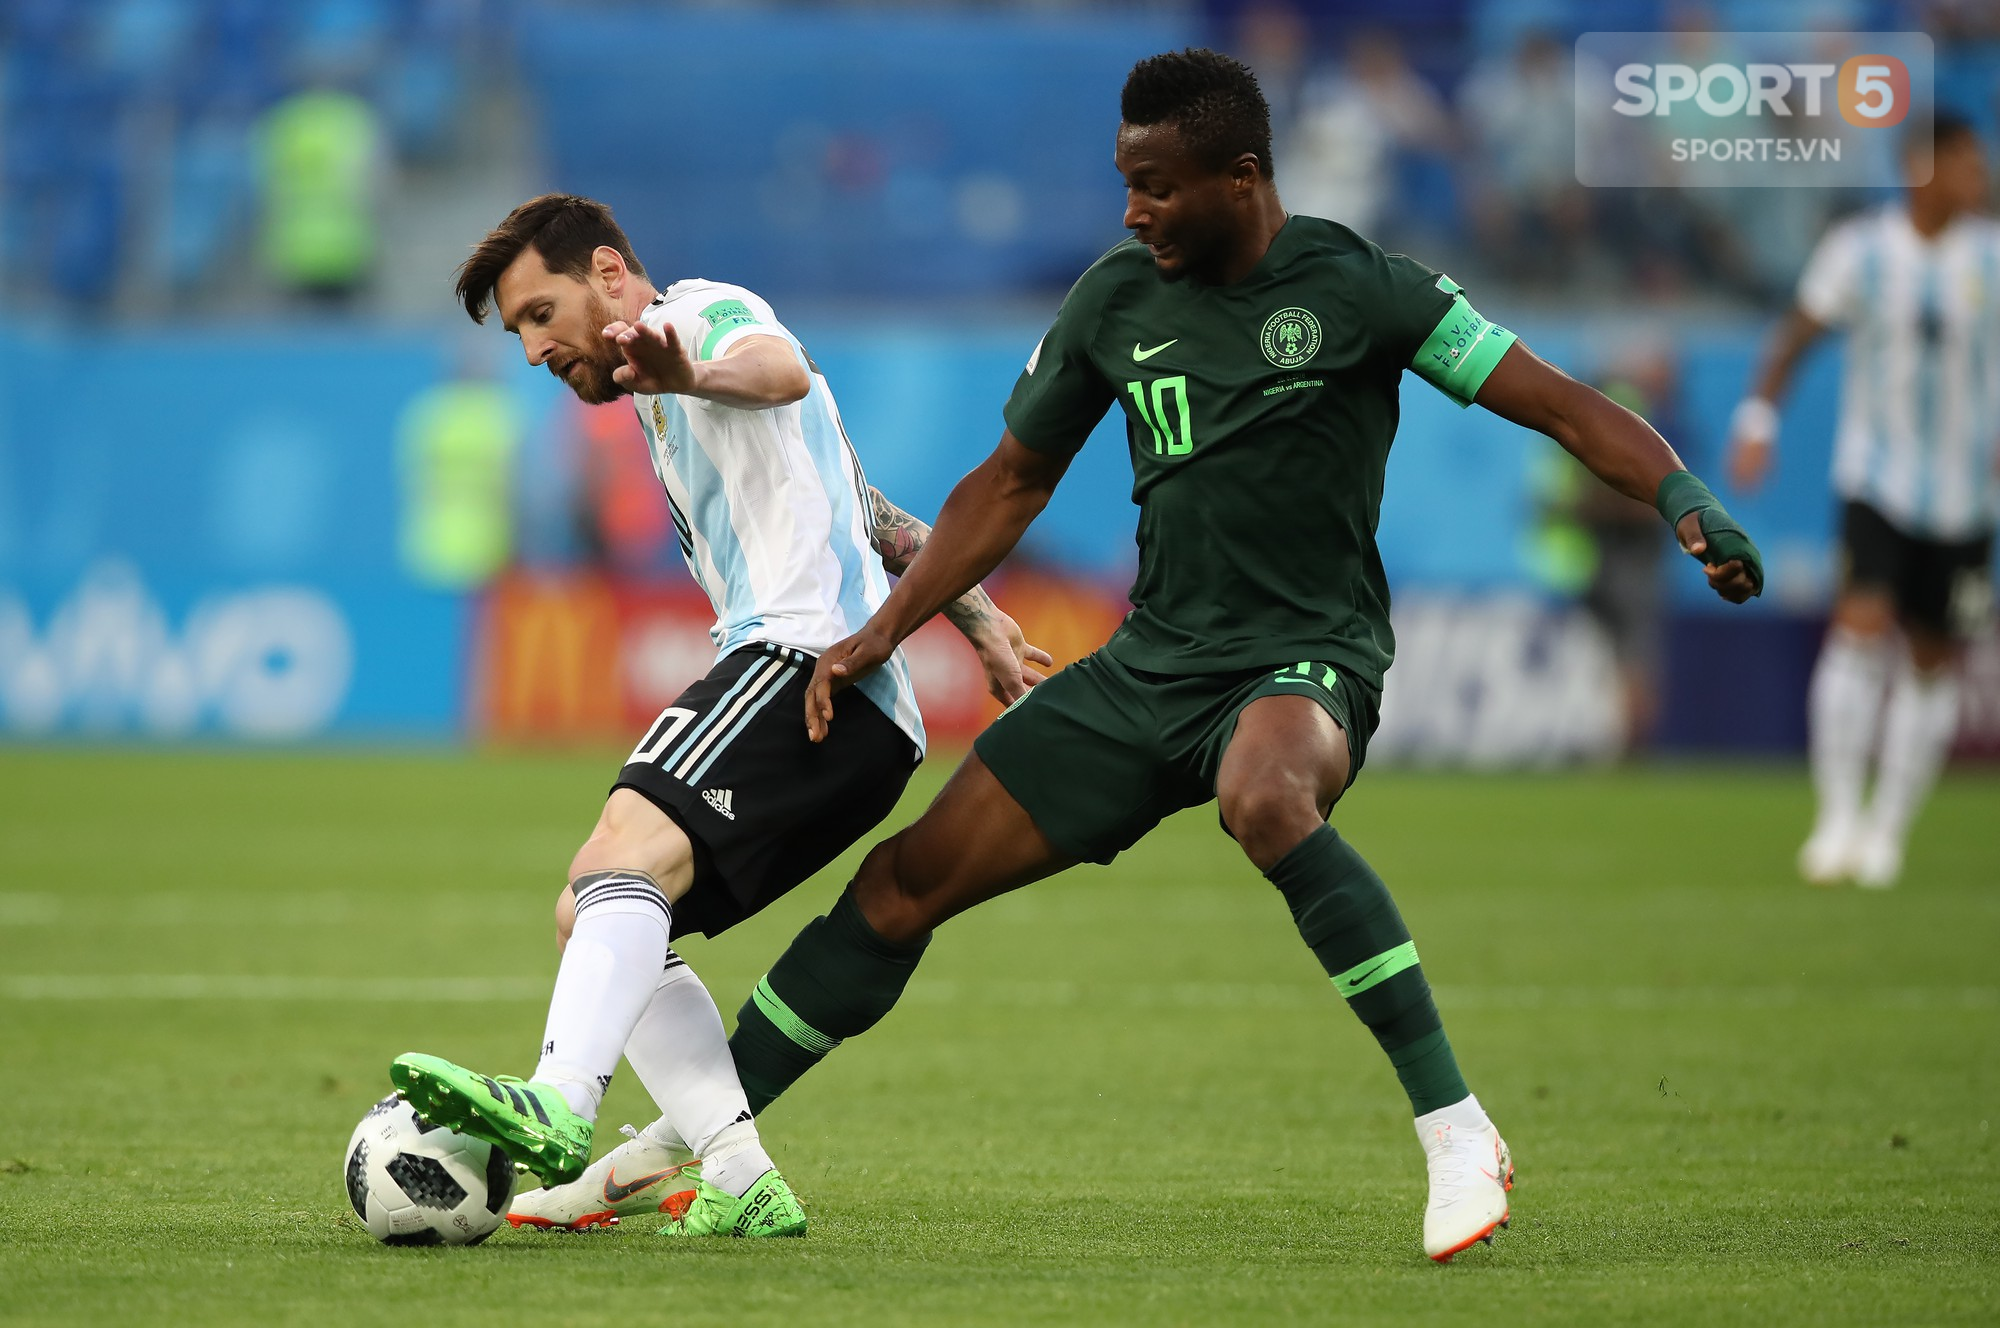 Sốc: Cha ngôi sao tuyển Nigeria bị bắt cóc khi World Cup đang diễn ra - Ảnh 1.